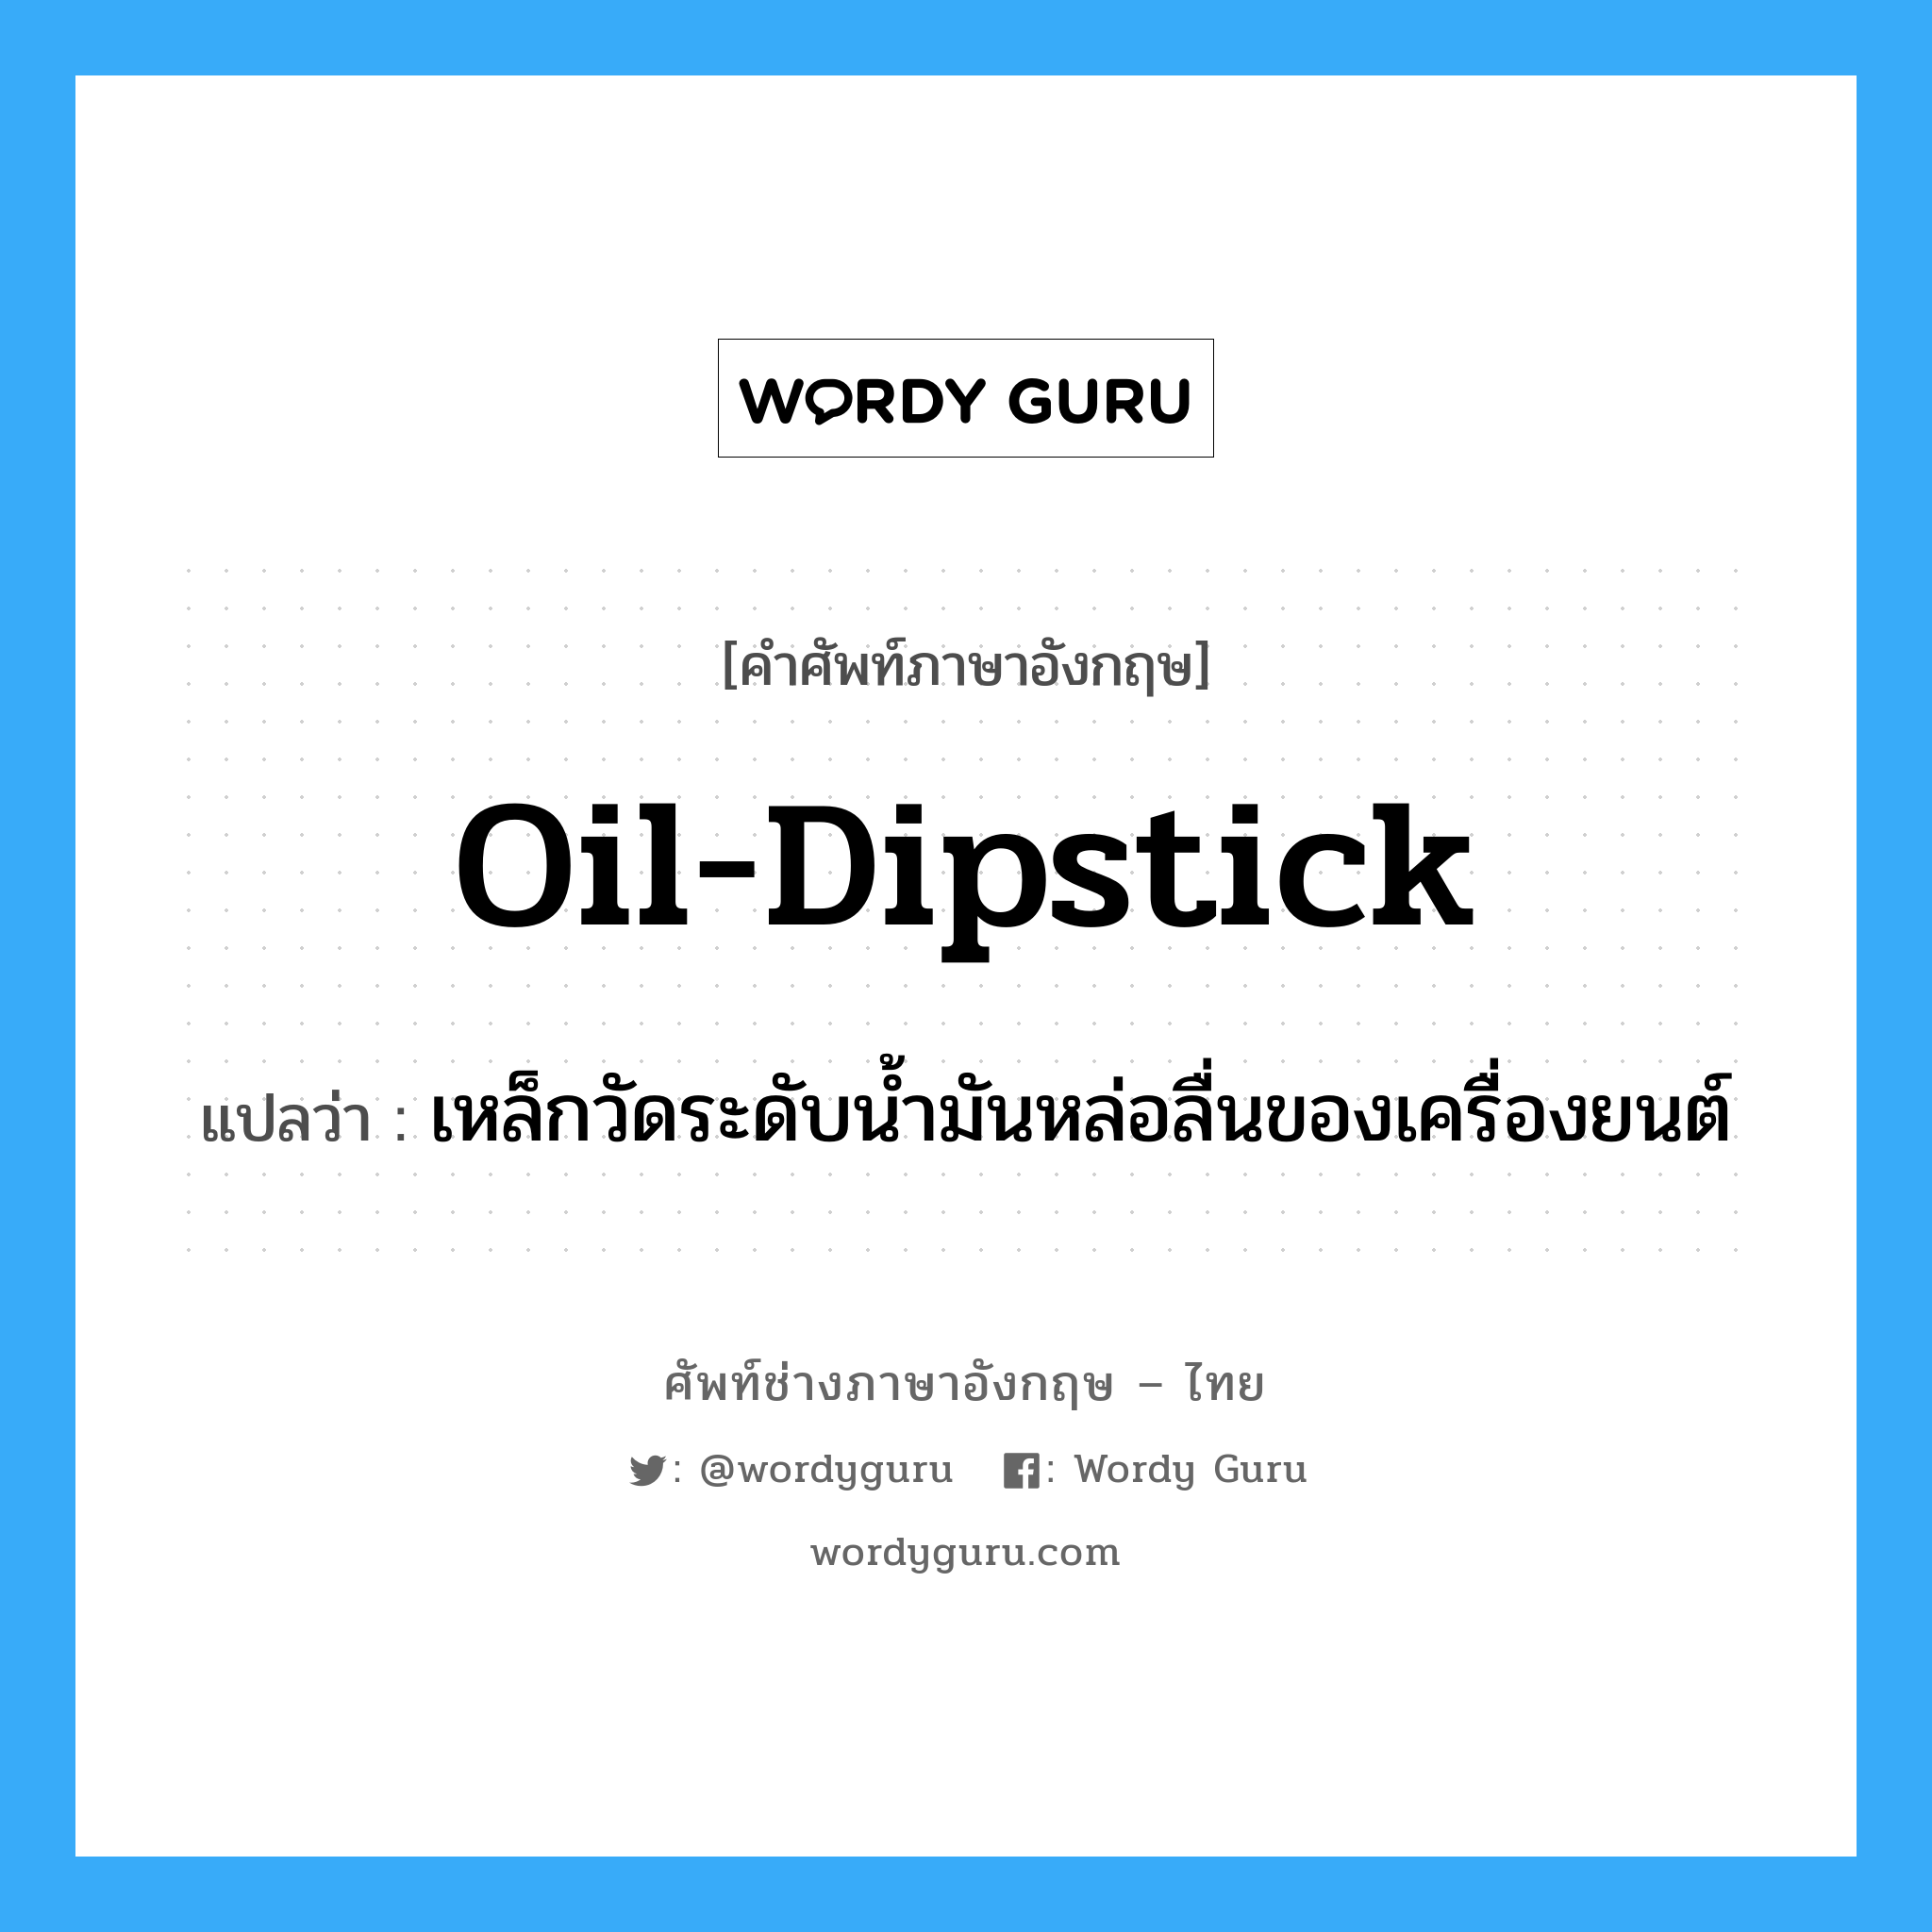 oil-dipstick แปลว่า?, คำศัพท์ช่างภาษาอังกฤษ - ไทย oil-dipstick คำศัพท์ภาษาอังกฤษ oil-dipstick แปลว่า เหล็กวัดระดับน้ำมันหล่อลื่นของเครื่องยนต์